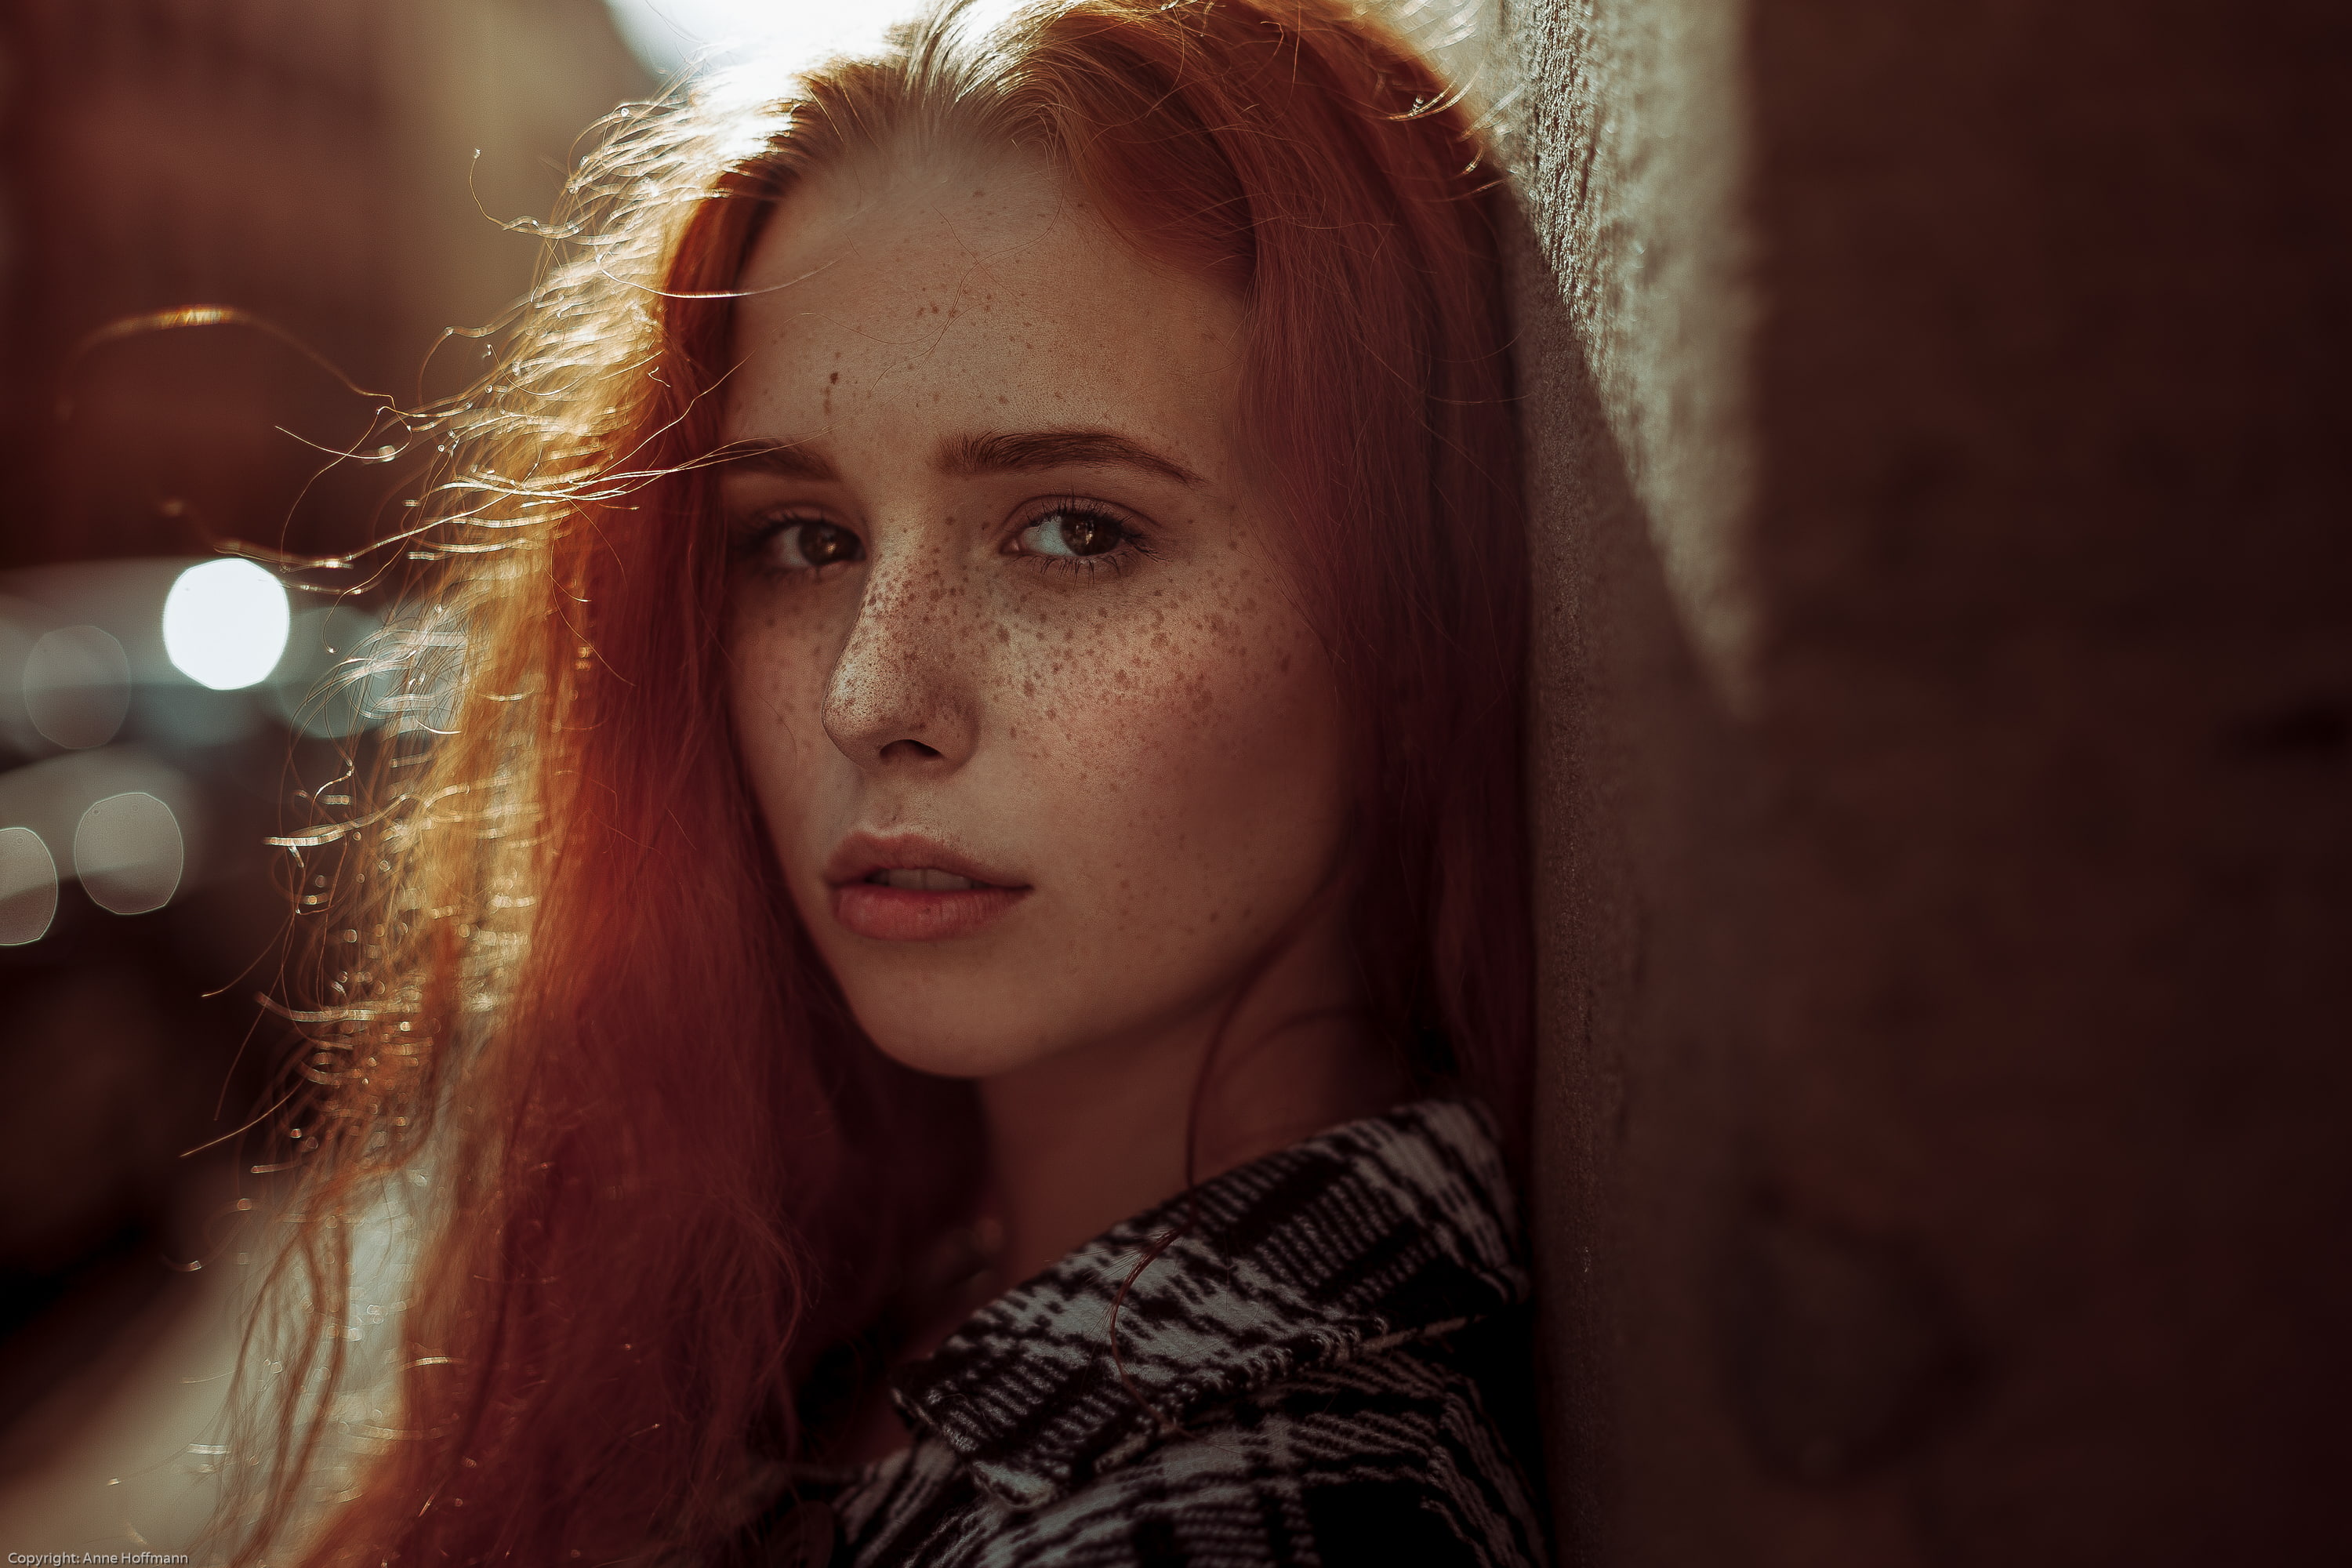 women, redhead, face, portrait, freckles